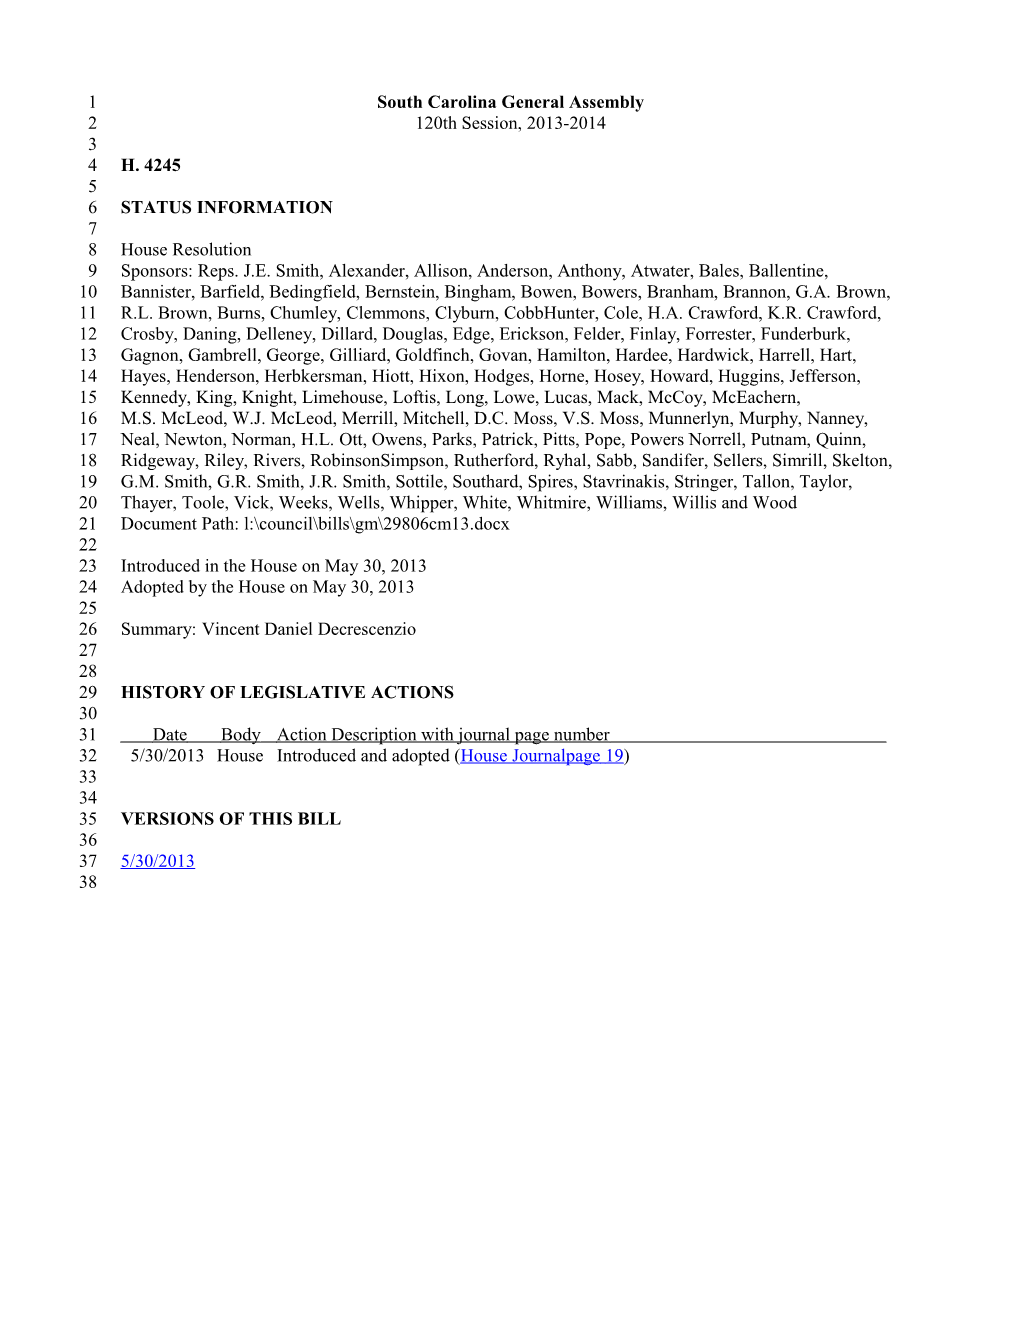 2013-2014 Bill 4245: Vincent Daniel Decrescenzio - South Carolina Legislature Online